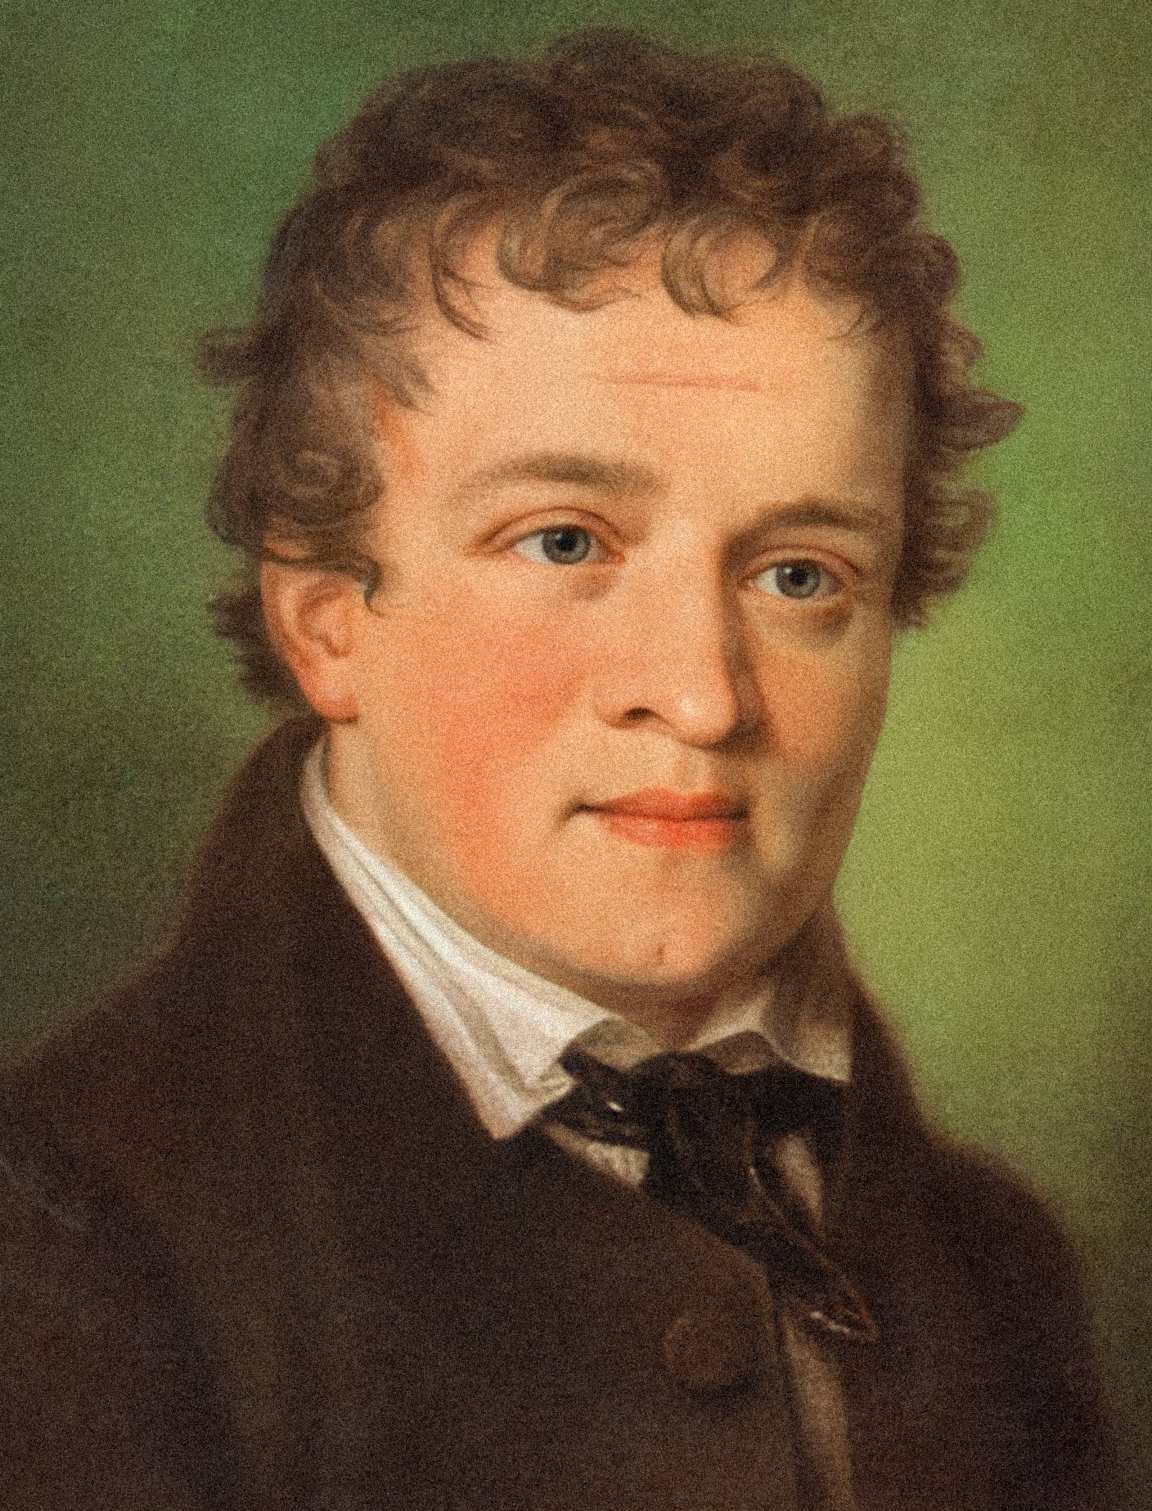 Kaspar Hauser: Az 1820-as években ismeretlen fiút rejtélyes módon csak 5 évvel később gyilkolták meg 1